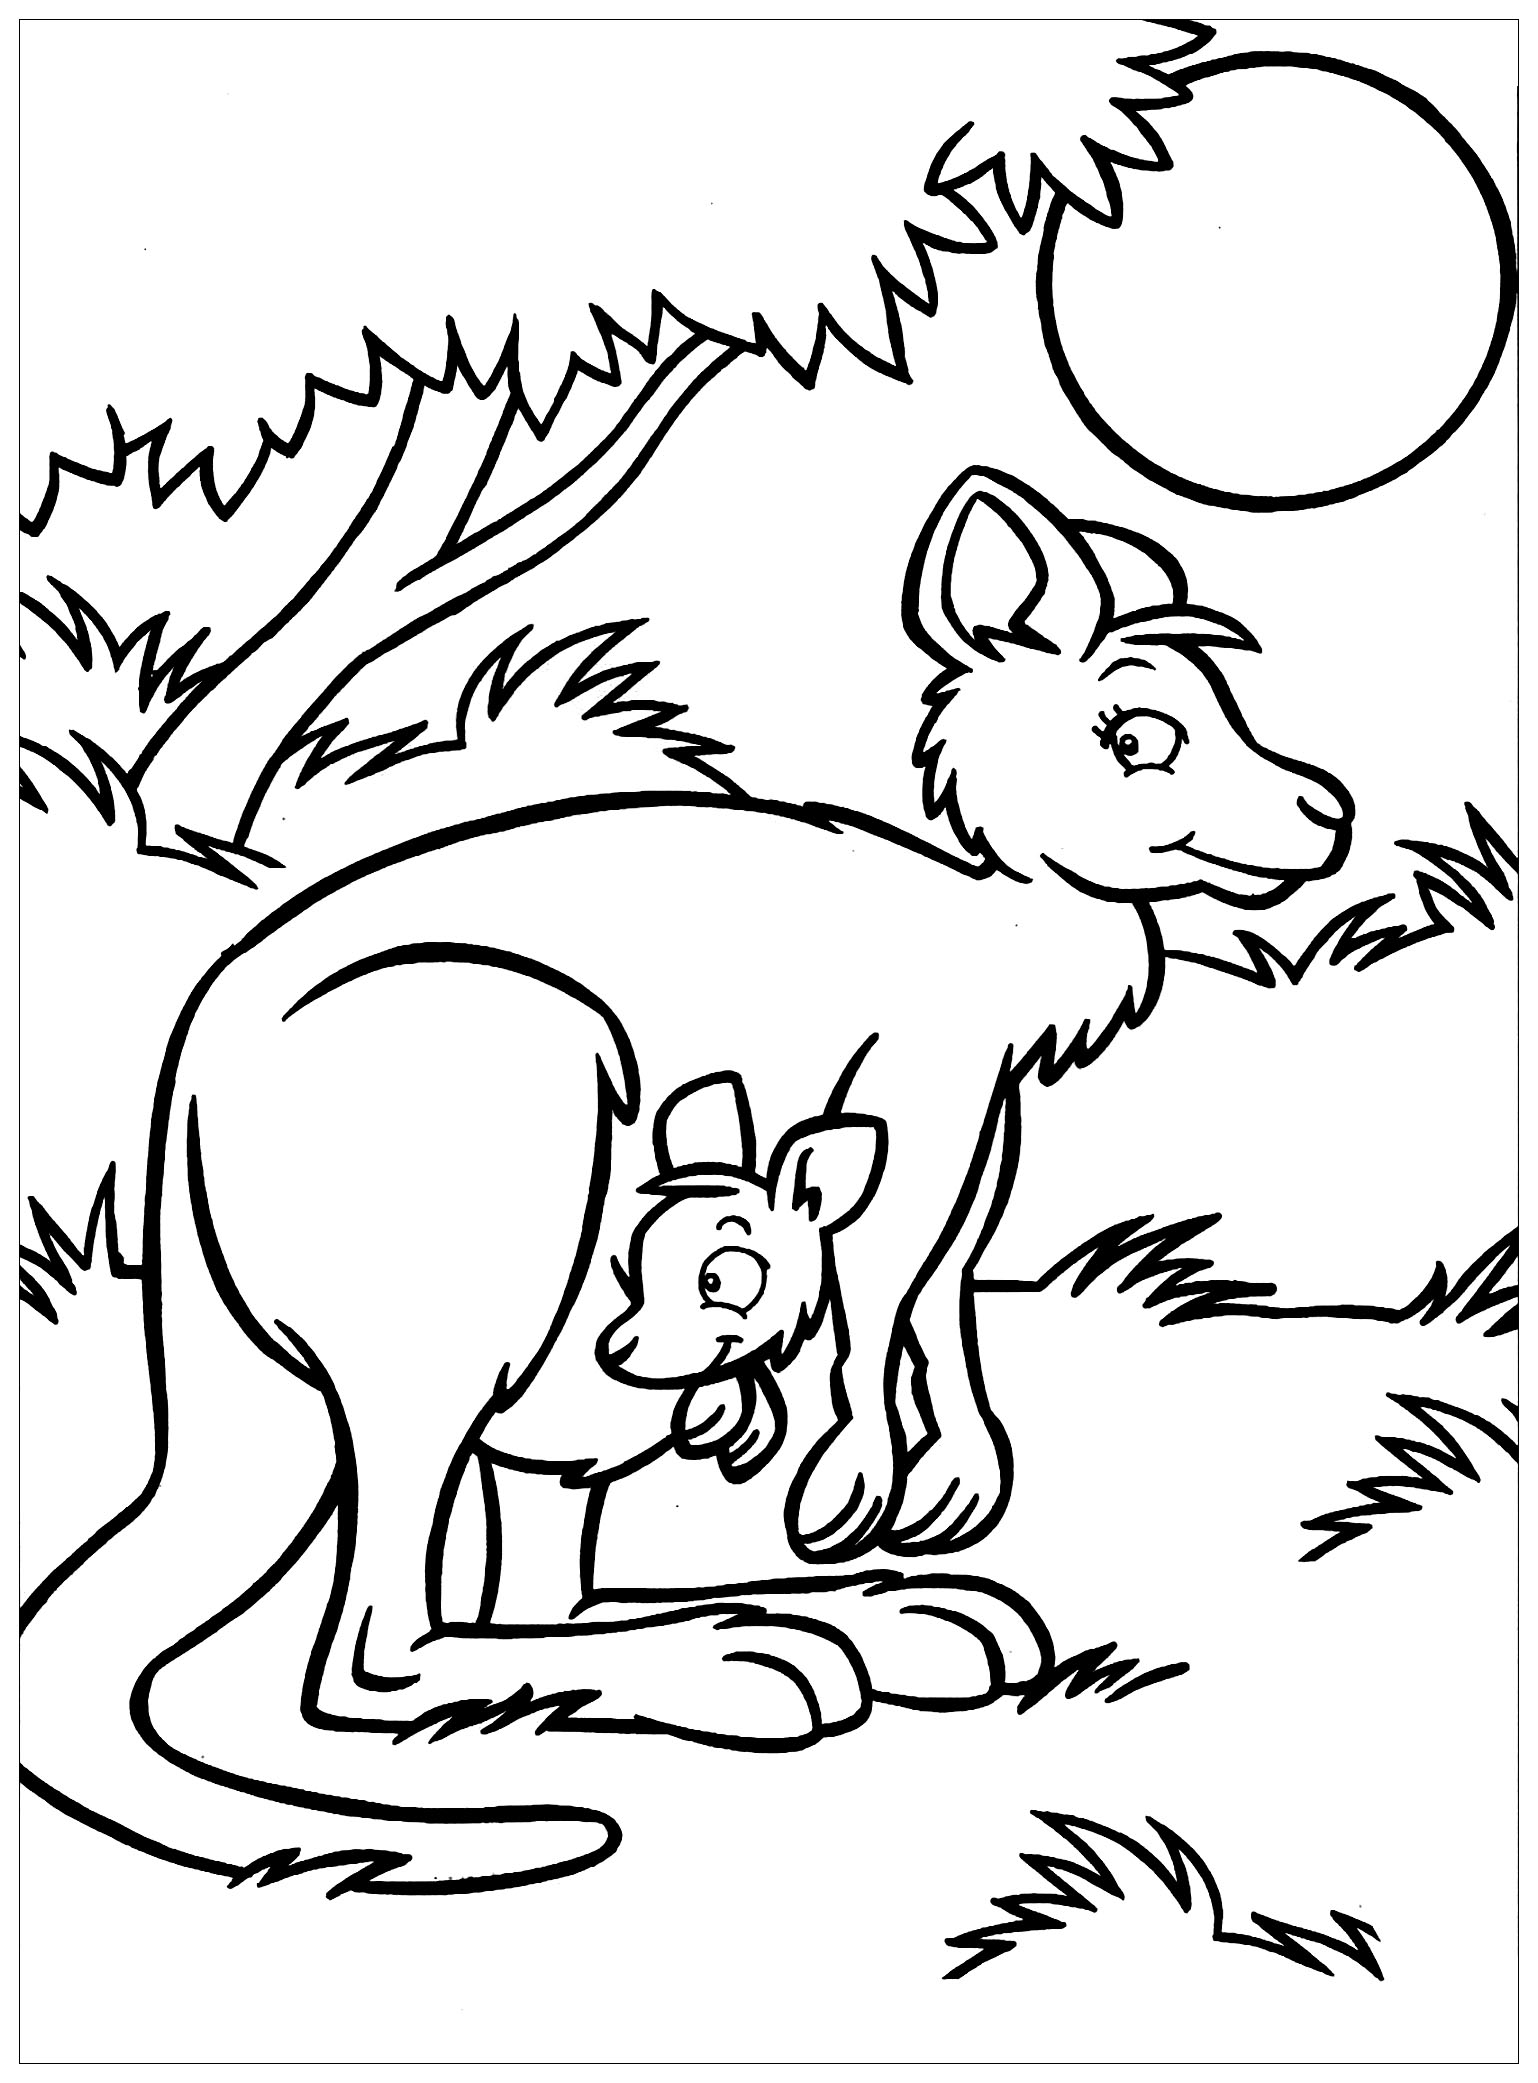 Download Kangaroos free to color for kids - Kangaroos Kids Coloring Pages